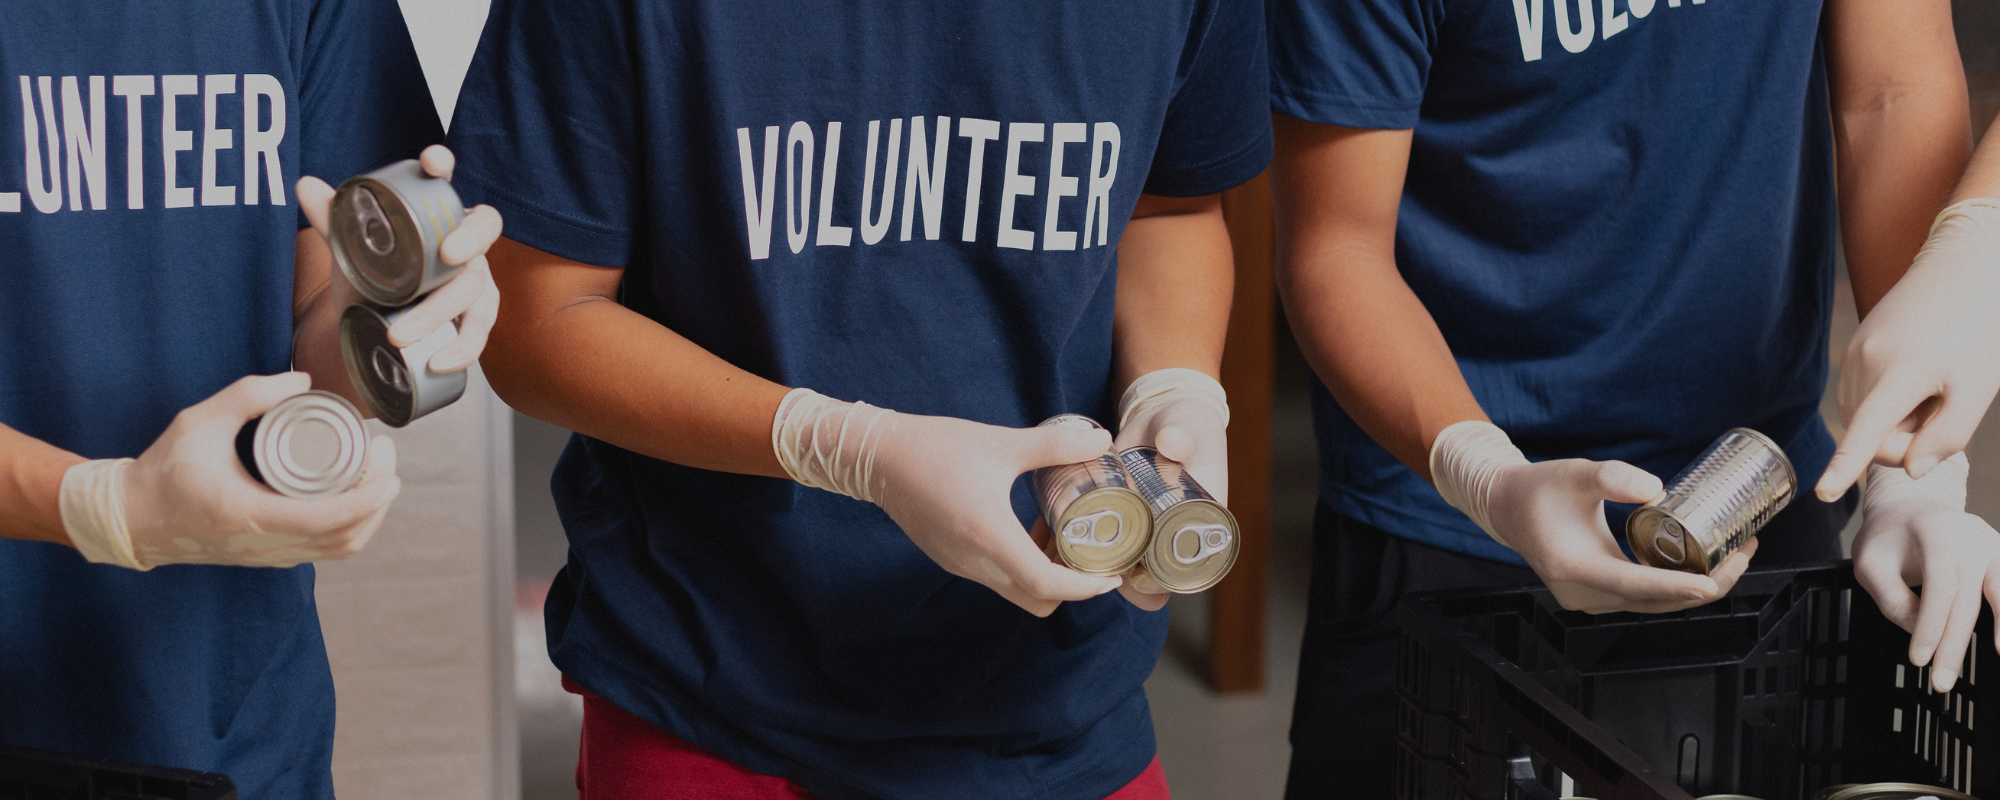 Volunteer Organizations